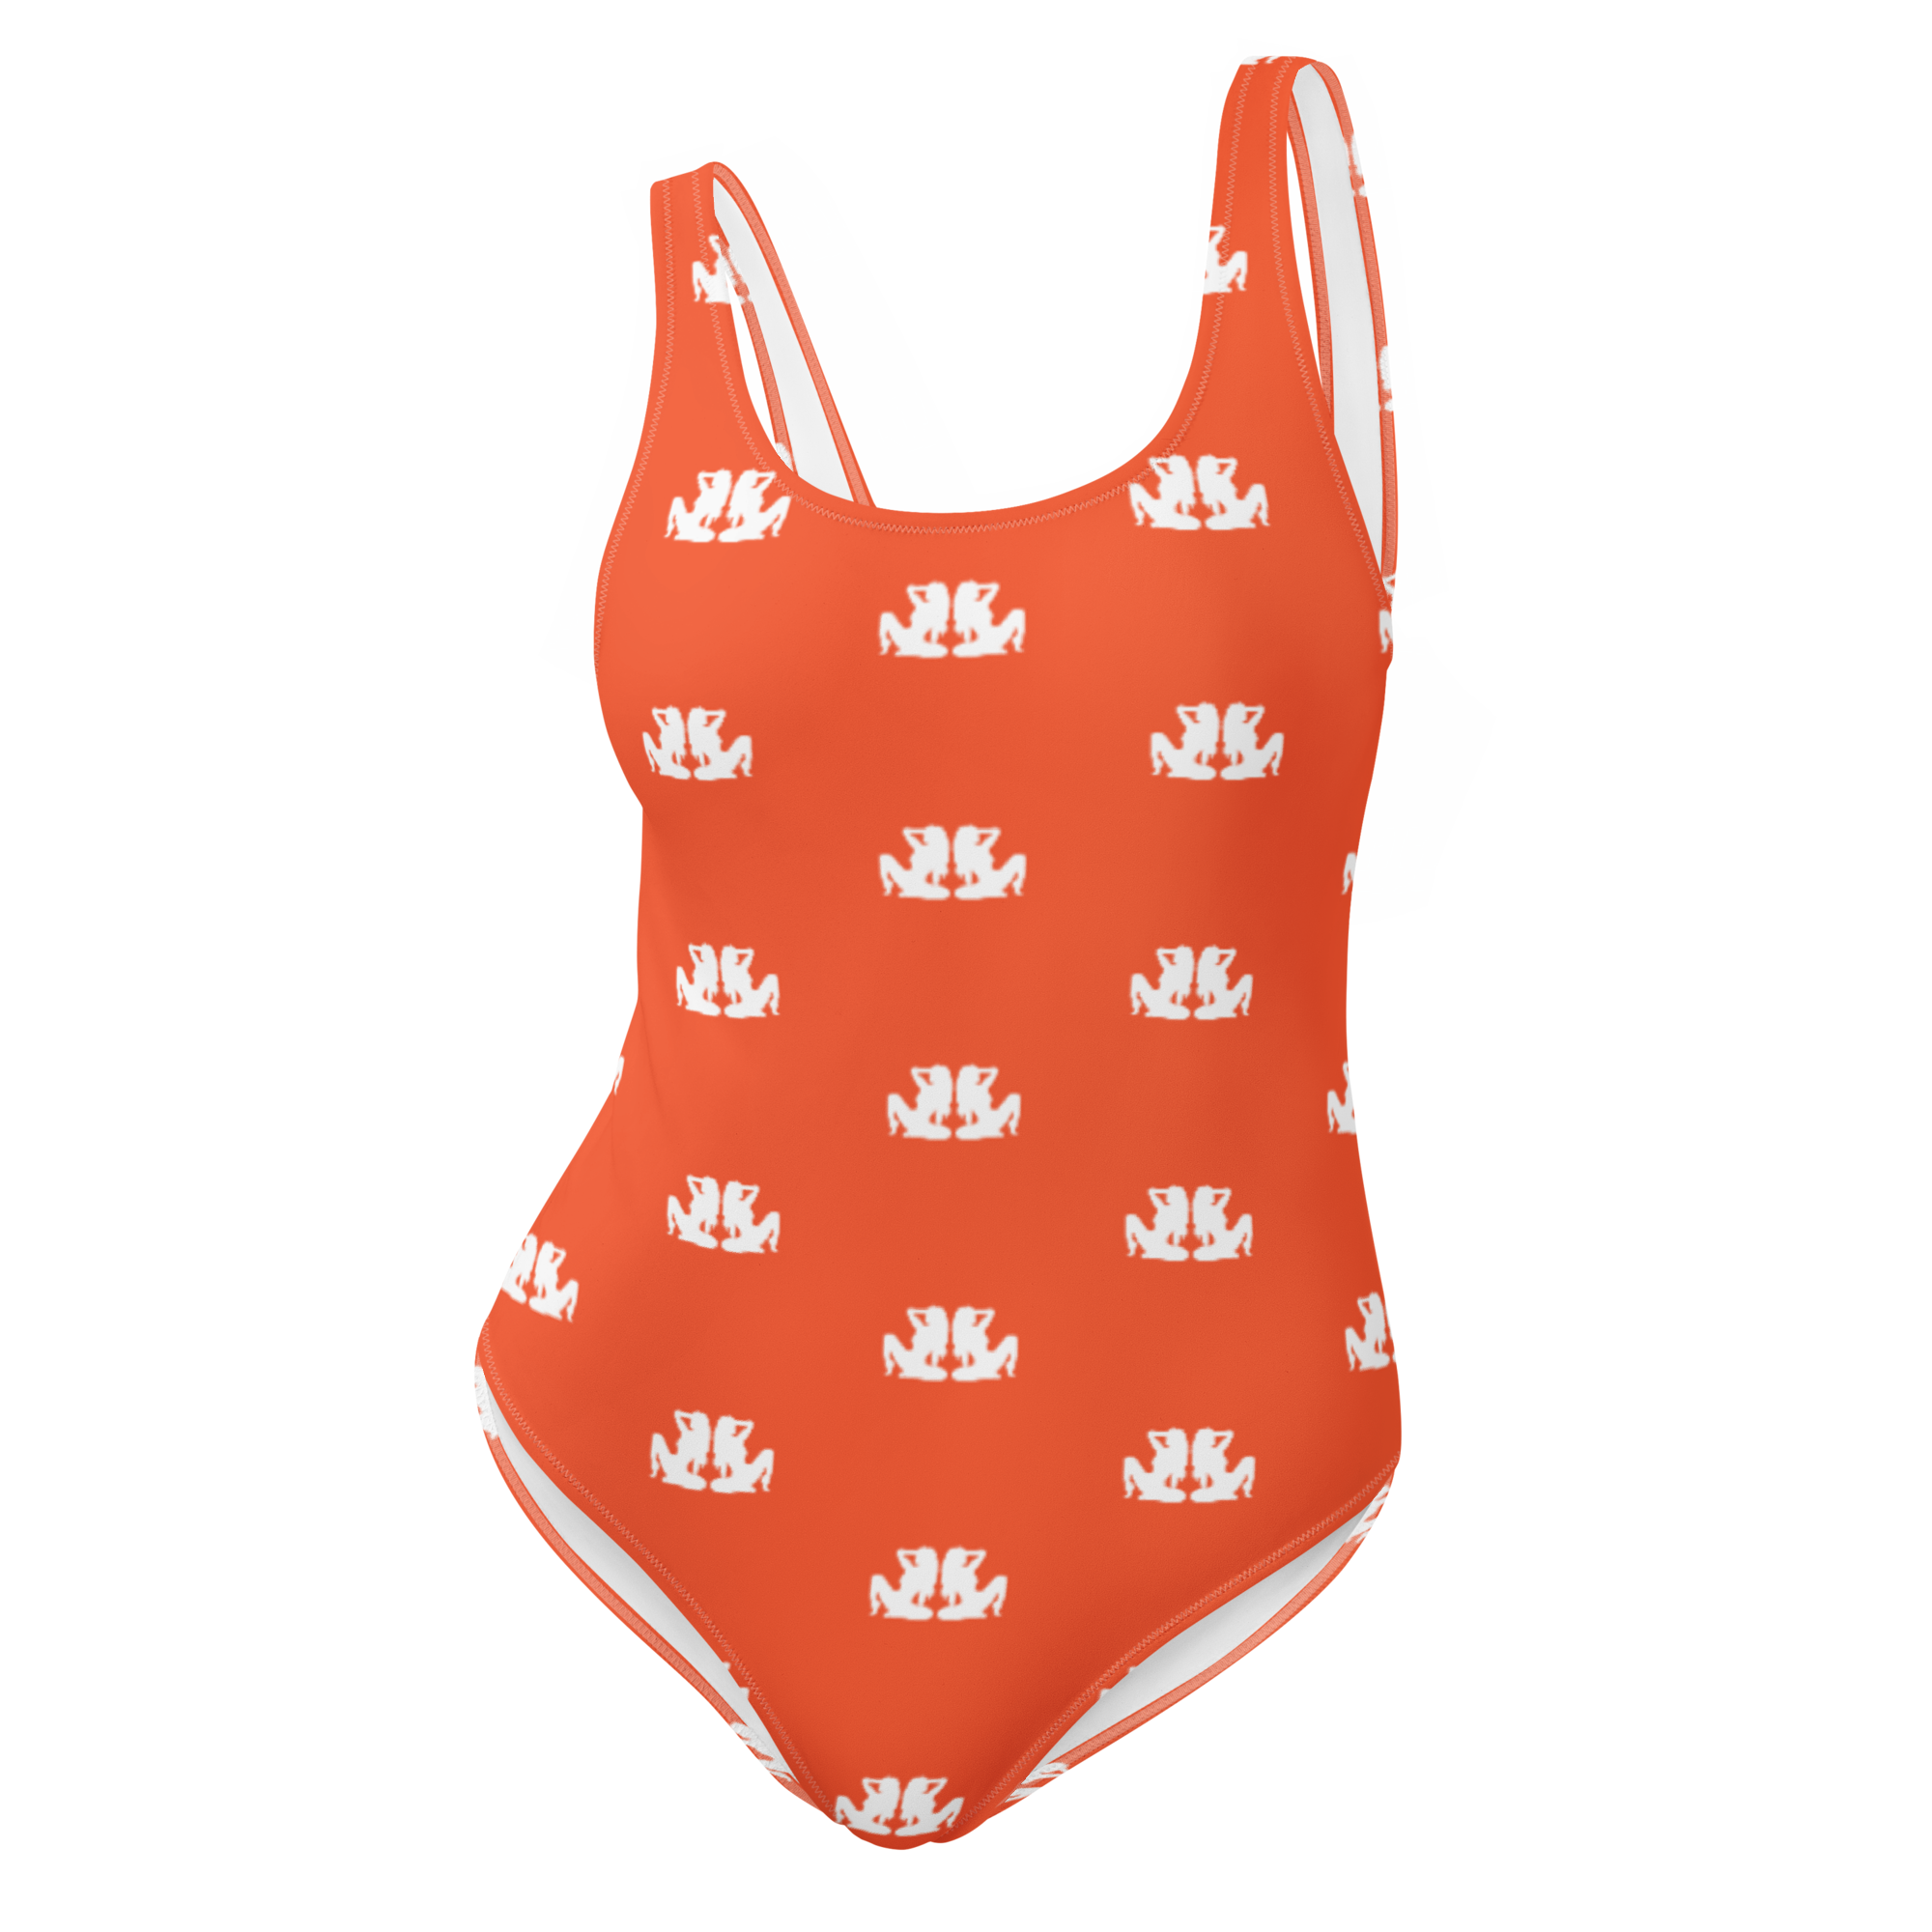 Bộ đồ bơi Monogram Swimsuit sẽ khiến bạn gái cảm thấy tự tin và nổi bật trên bãi biển hay hiểu động. Thiết kế sang trọng và đẳng cấp, sự kết hợp giữa màu sắc và họa tiết sẽ khuấy động mọi ánh nhìn xung quanh.